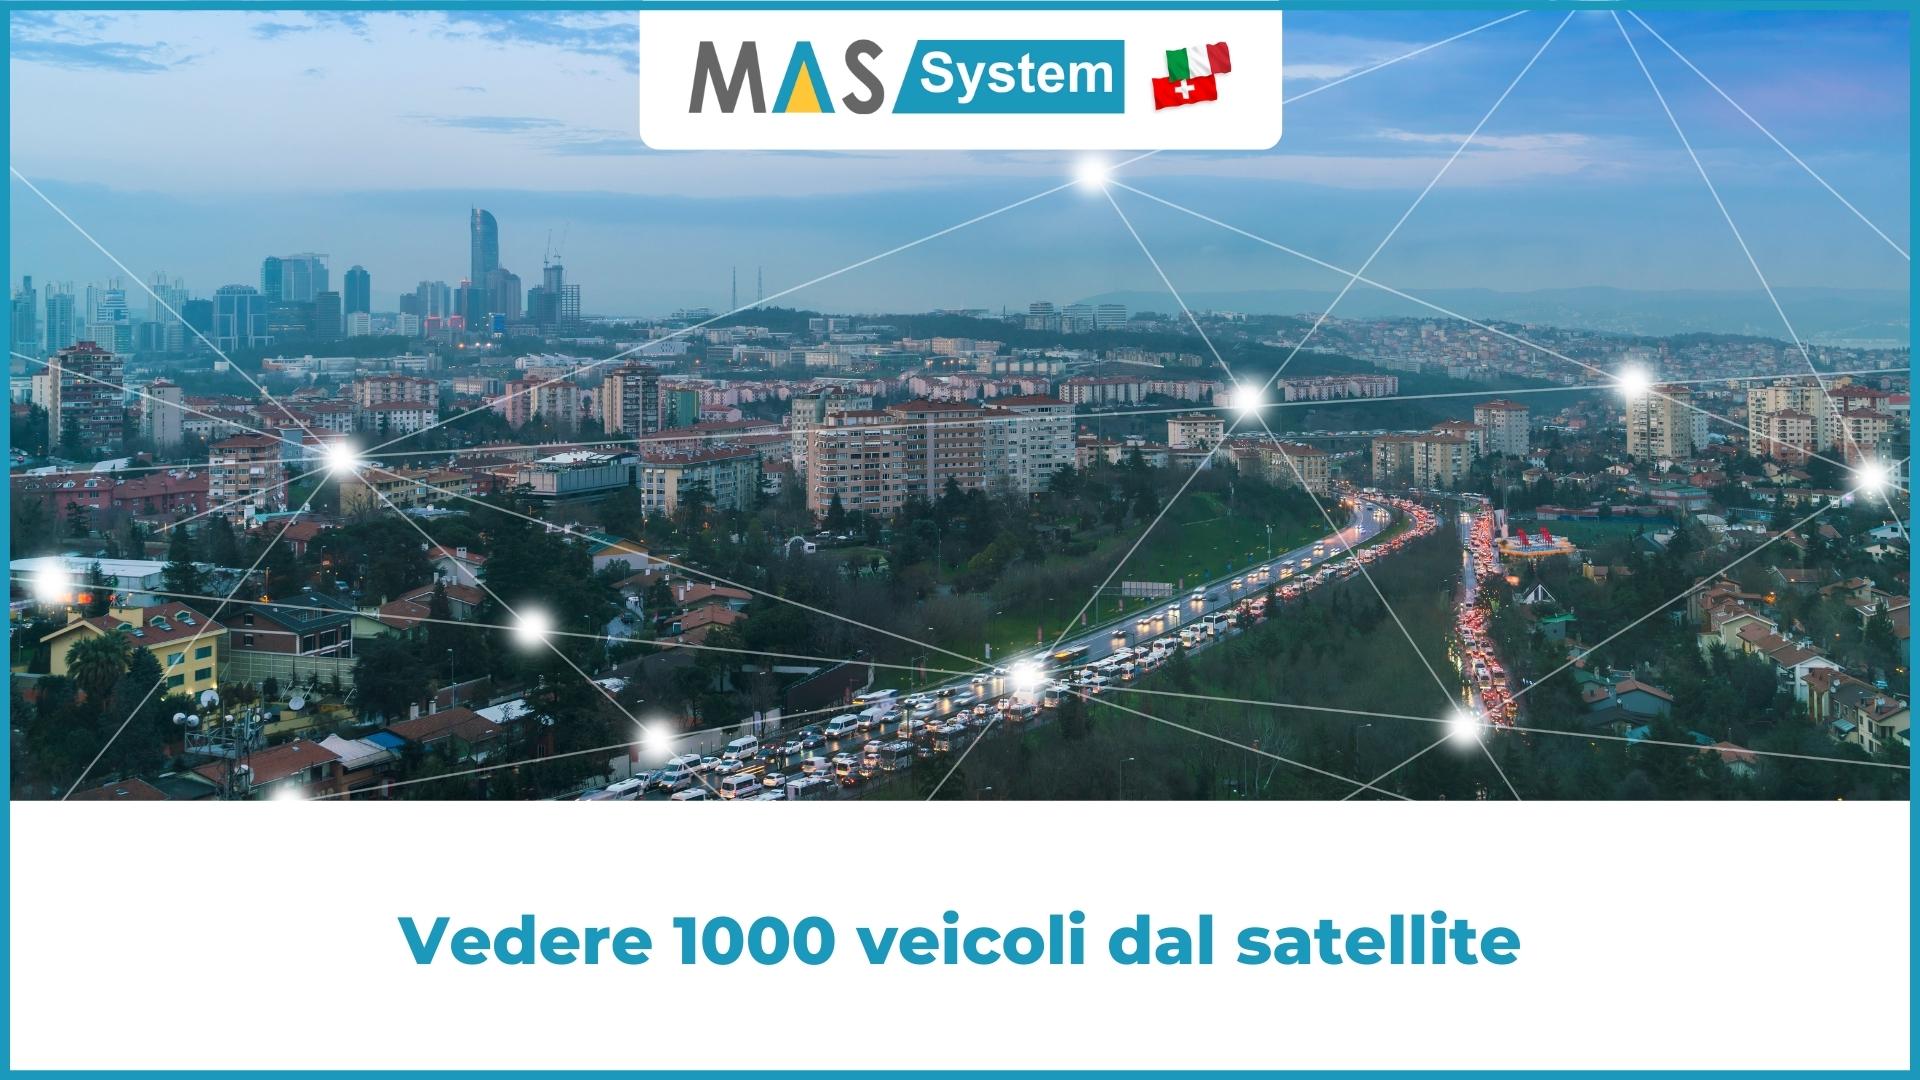 Vedere 1000 veicoli dal satellite | Mas System